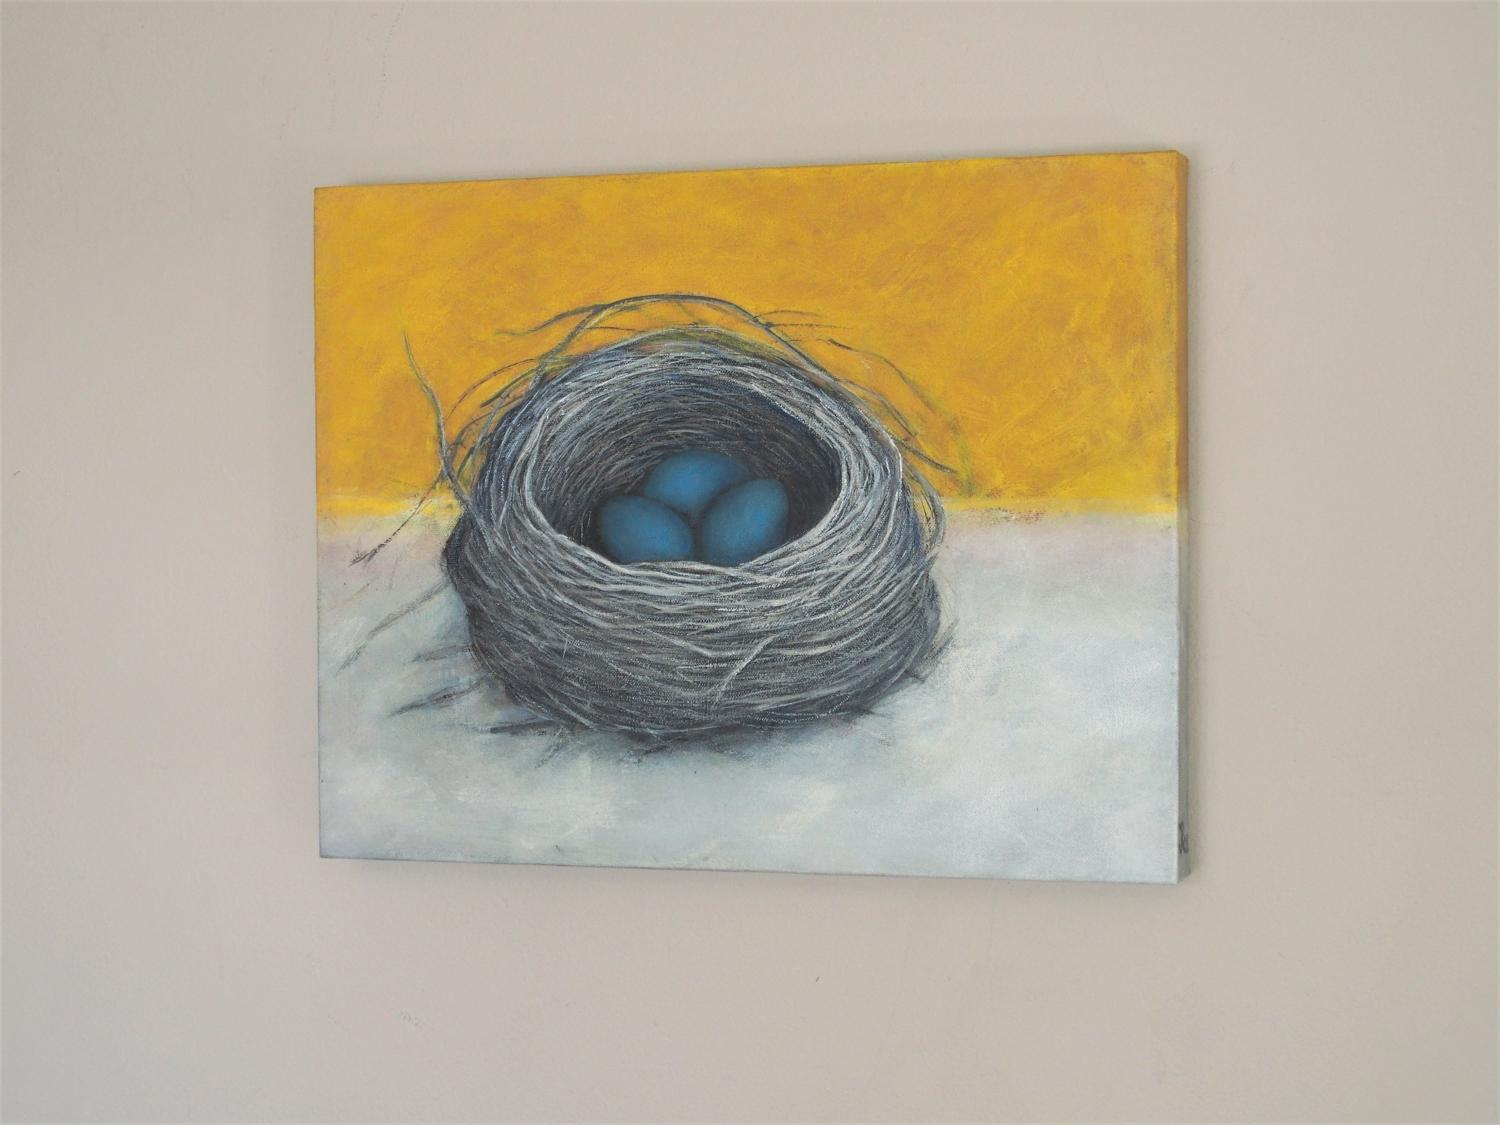 <p>Kommentare der KÃ¼nstlerin<br>Die KÃ¼nstlerin Jennifer Ross malt ein sonniges und heiteres Stillleben eines Rotkehlchennestes mit drei Eiern. In einer sorgfältig geflochtenen Ecke aus Gras und Zweigen liegen drei blaue Eier in den